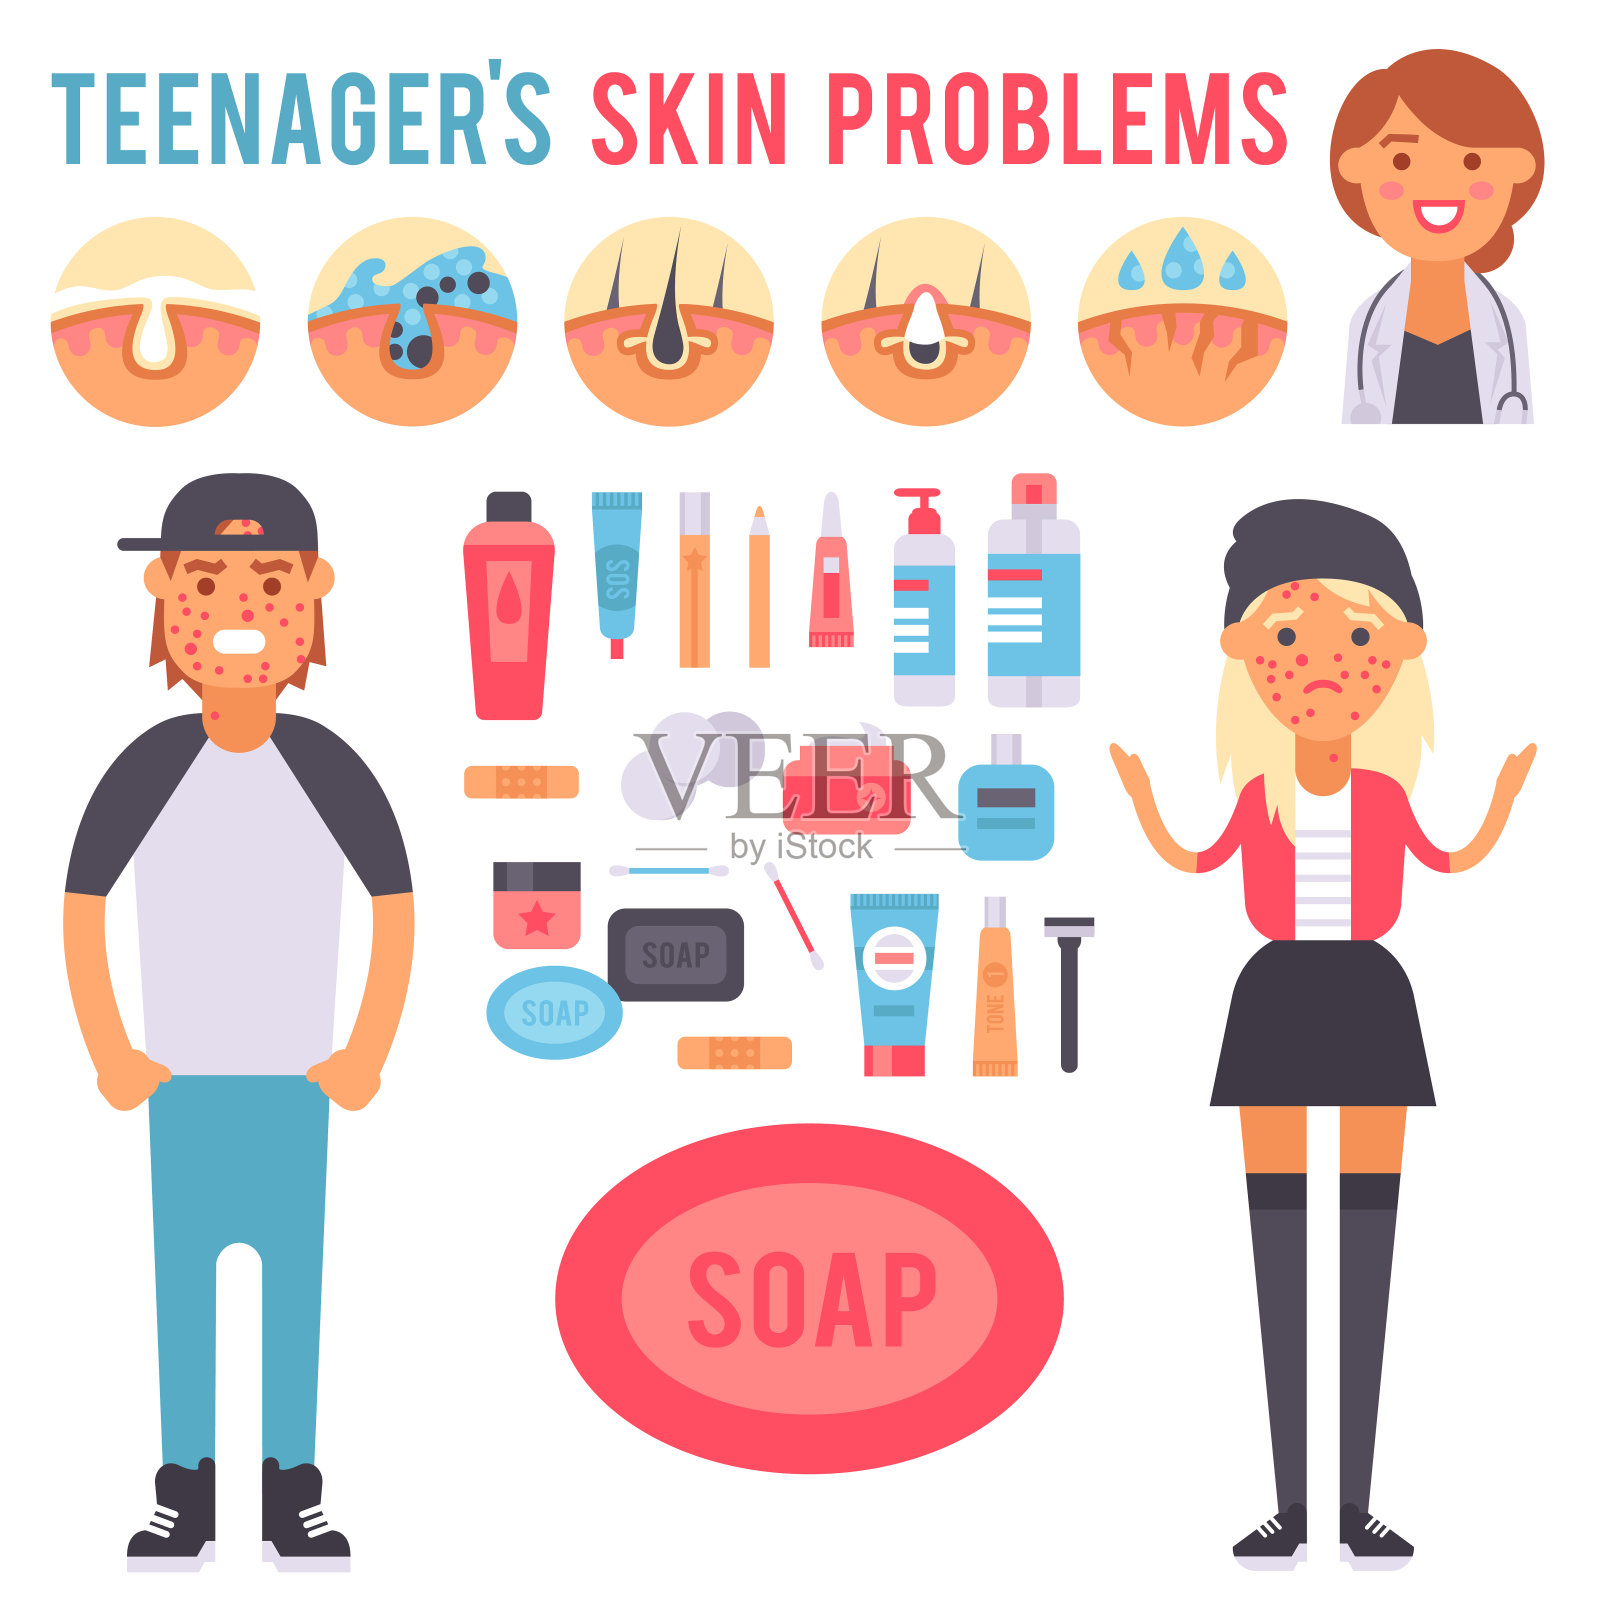 面部护理皮肤问题向量清洁人类美容青春痘皮肤病学不稳定面部瘦削护理青少年缺陷要素说明插画图片素材